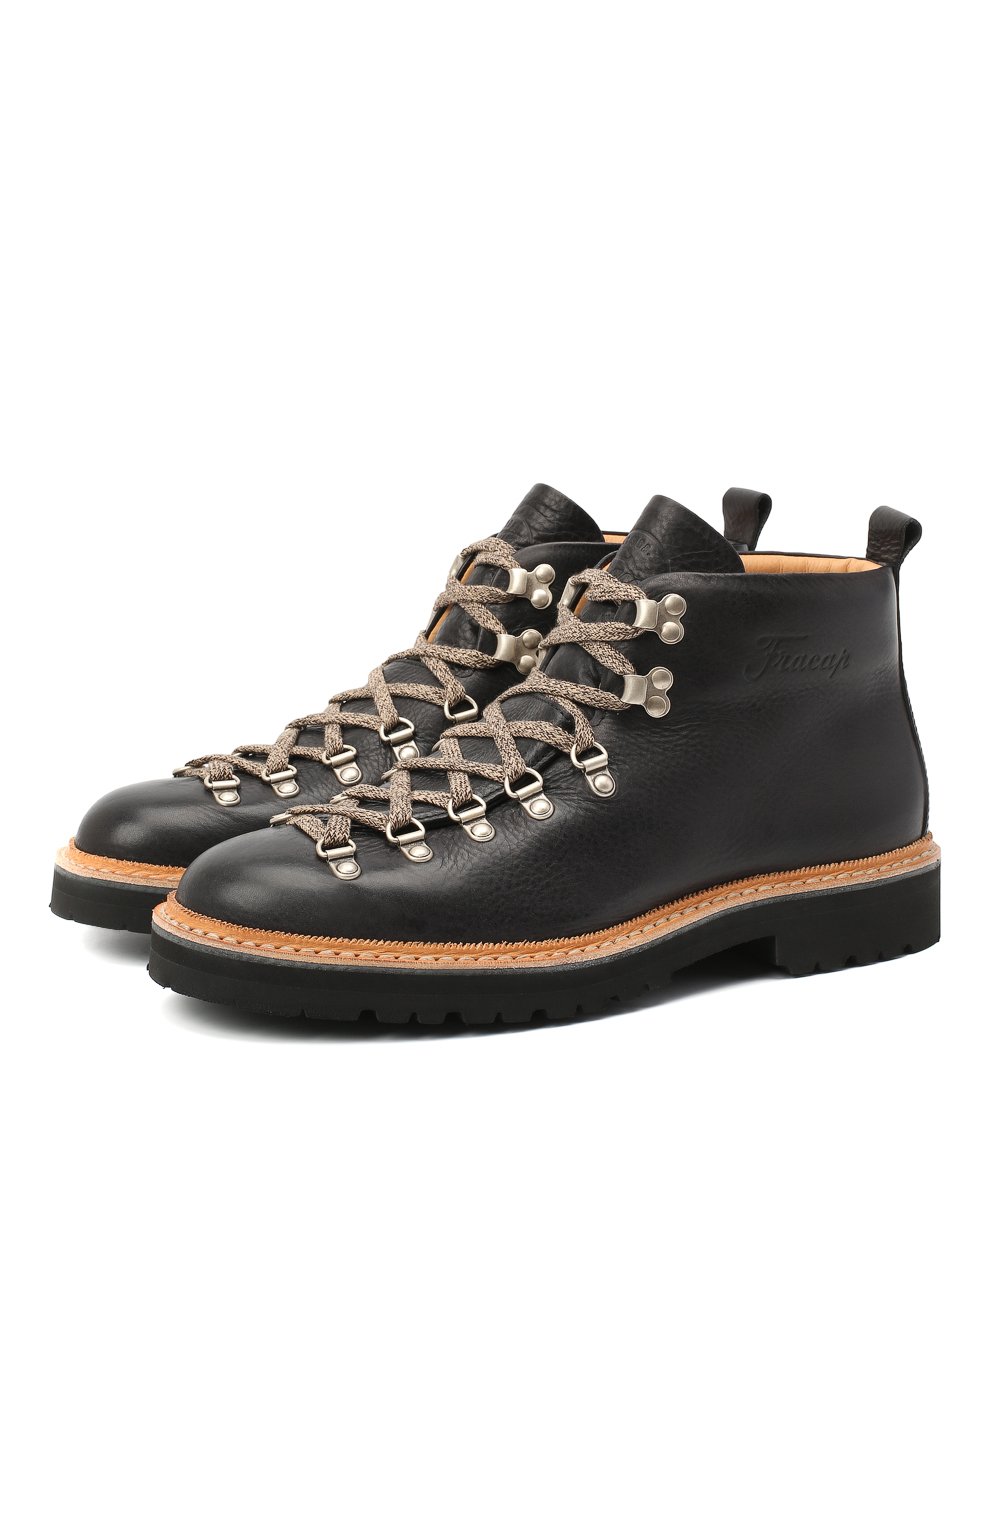 Мужские черные кожаные ботинки m120 FRACAP купить в интернет-магазине ЦУМ,арт. M120/NEBRASKA/GUARD.ZIG-ZAG/CALFSKIN/SILVER ANTIK/